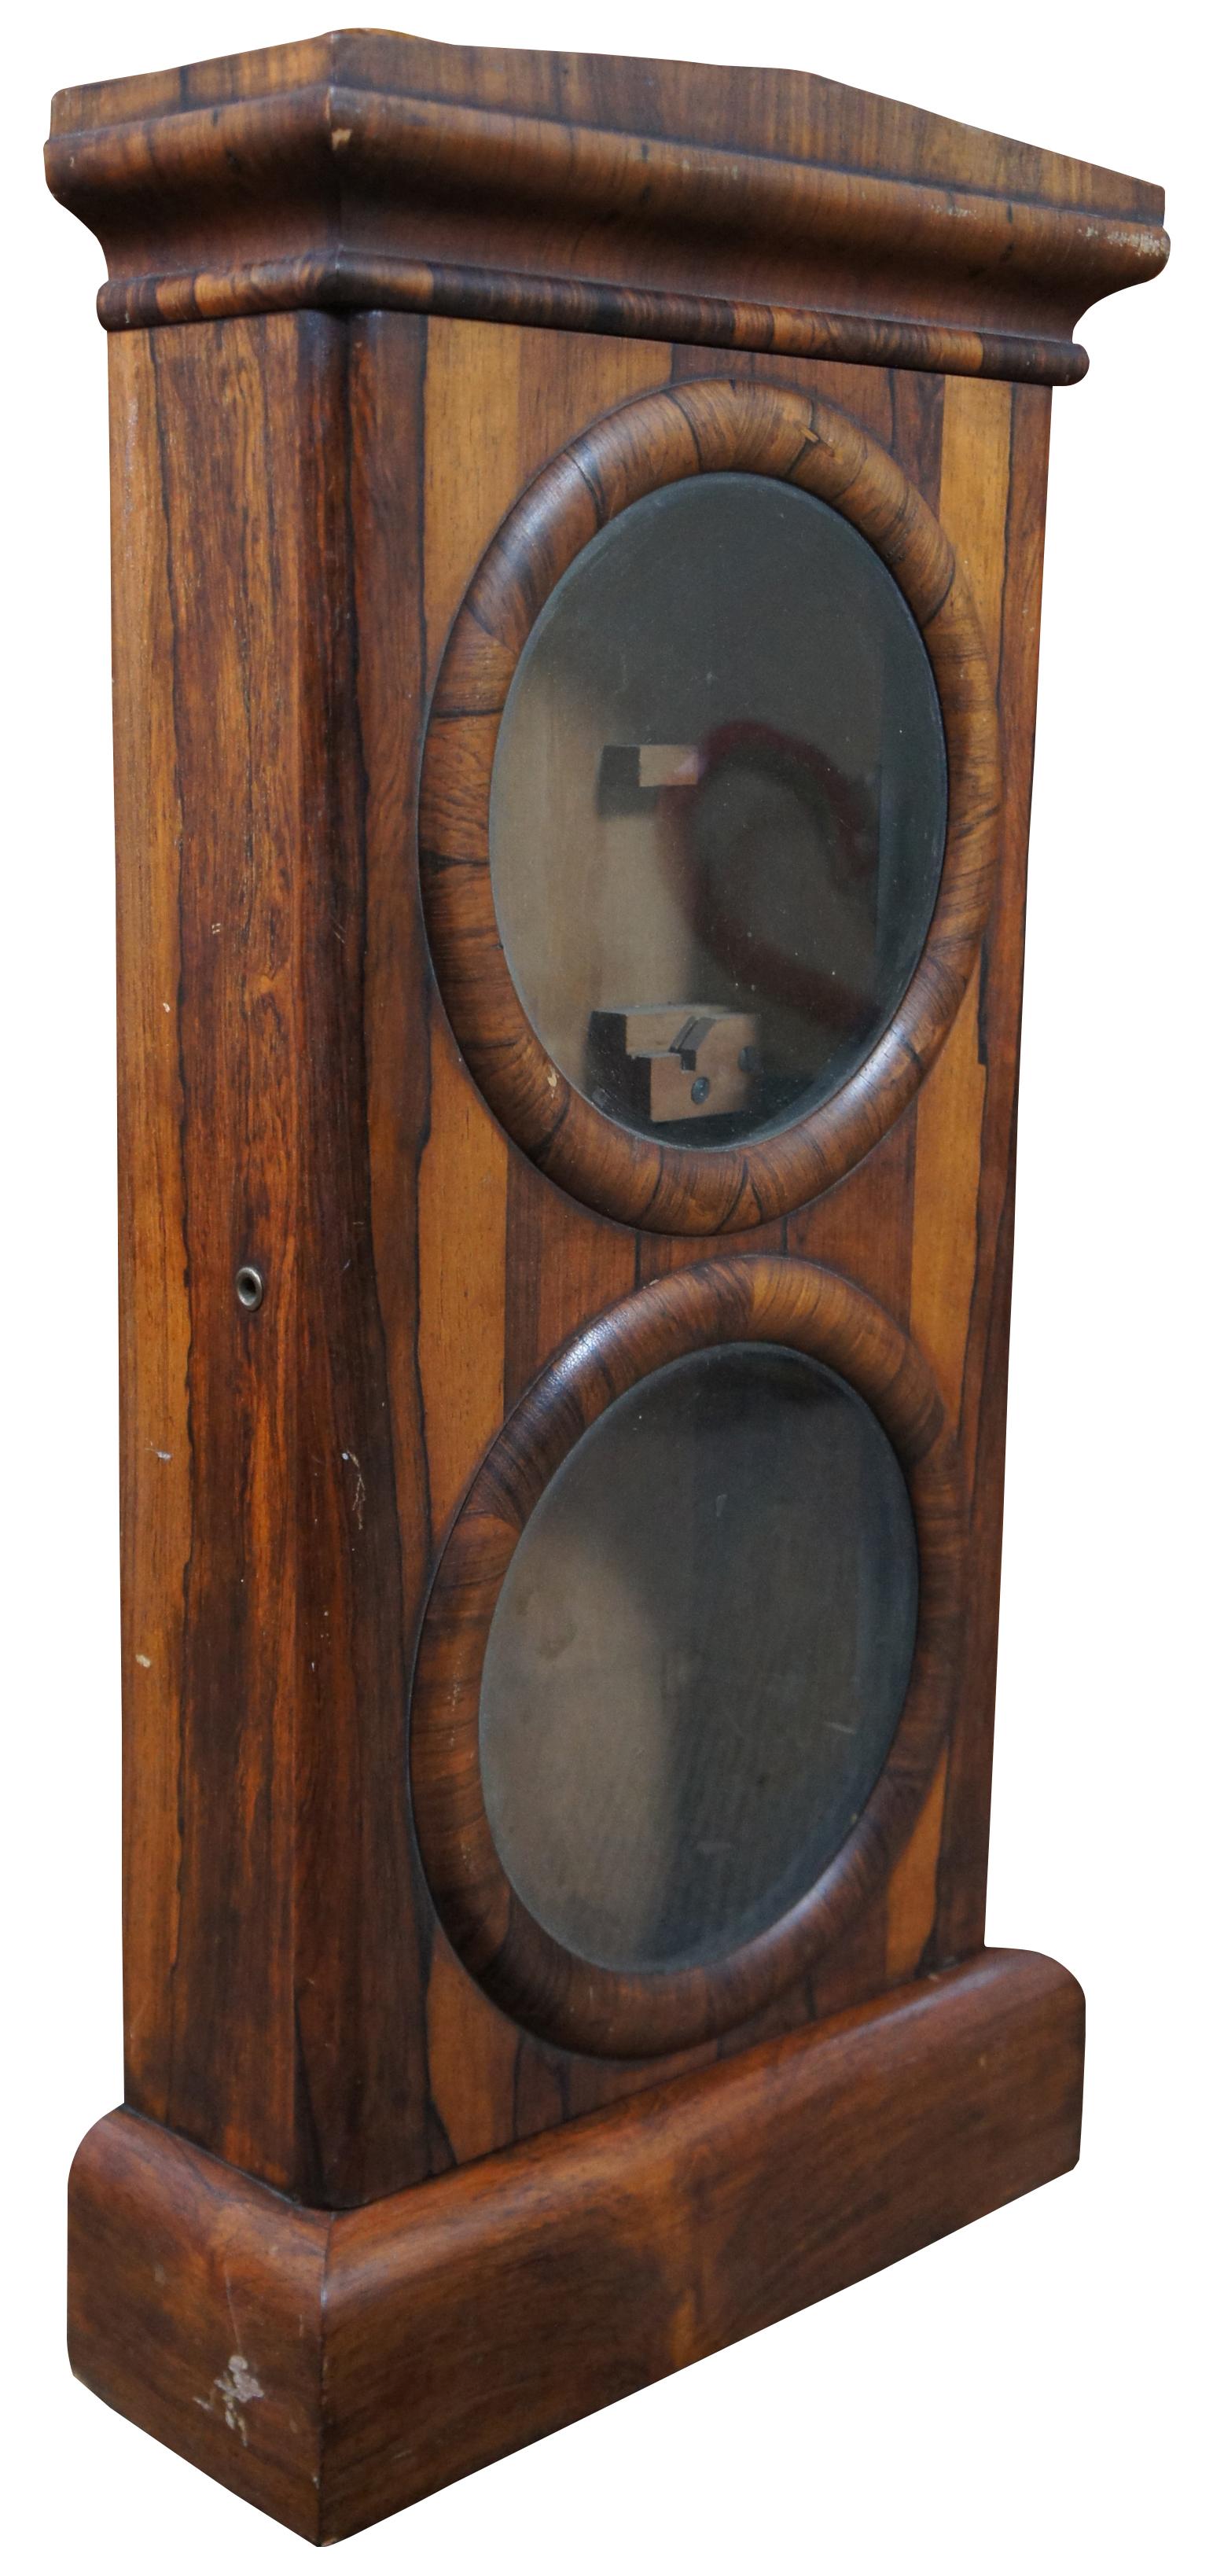 Ein außergewöhnliches und seltenes Gehäuse im Bundesstil für eine Seth Thomas Kalenderuhr Modell No 2 oder No 3. Hergestellt im letzten Viertel des 19. Jahrhunderts. Maße: 27